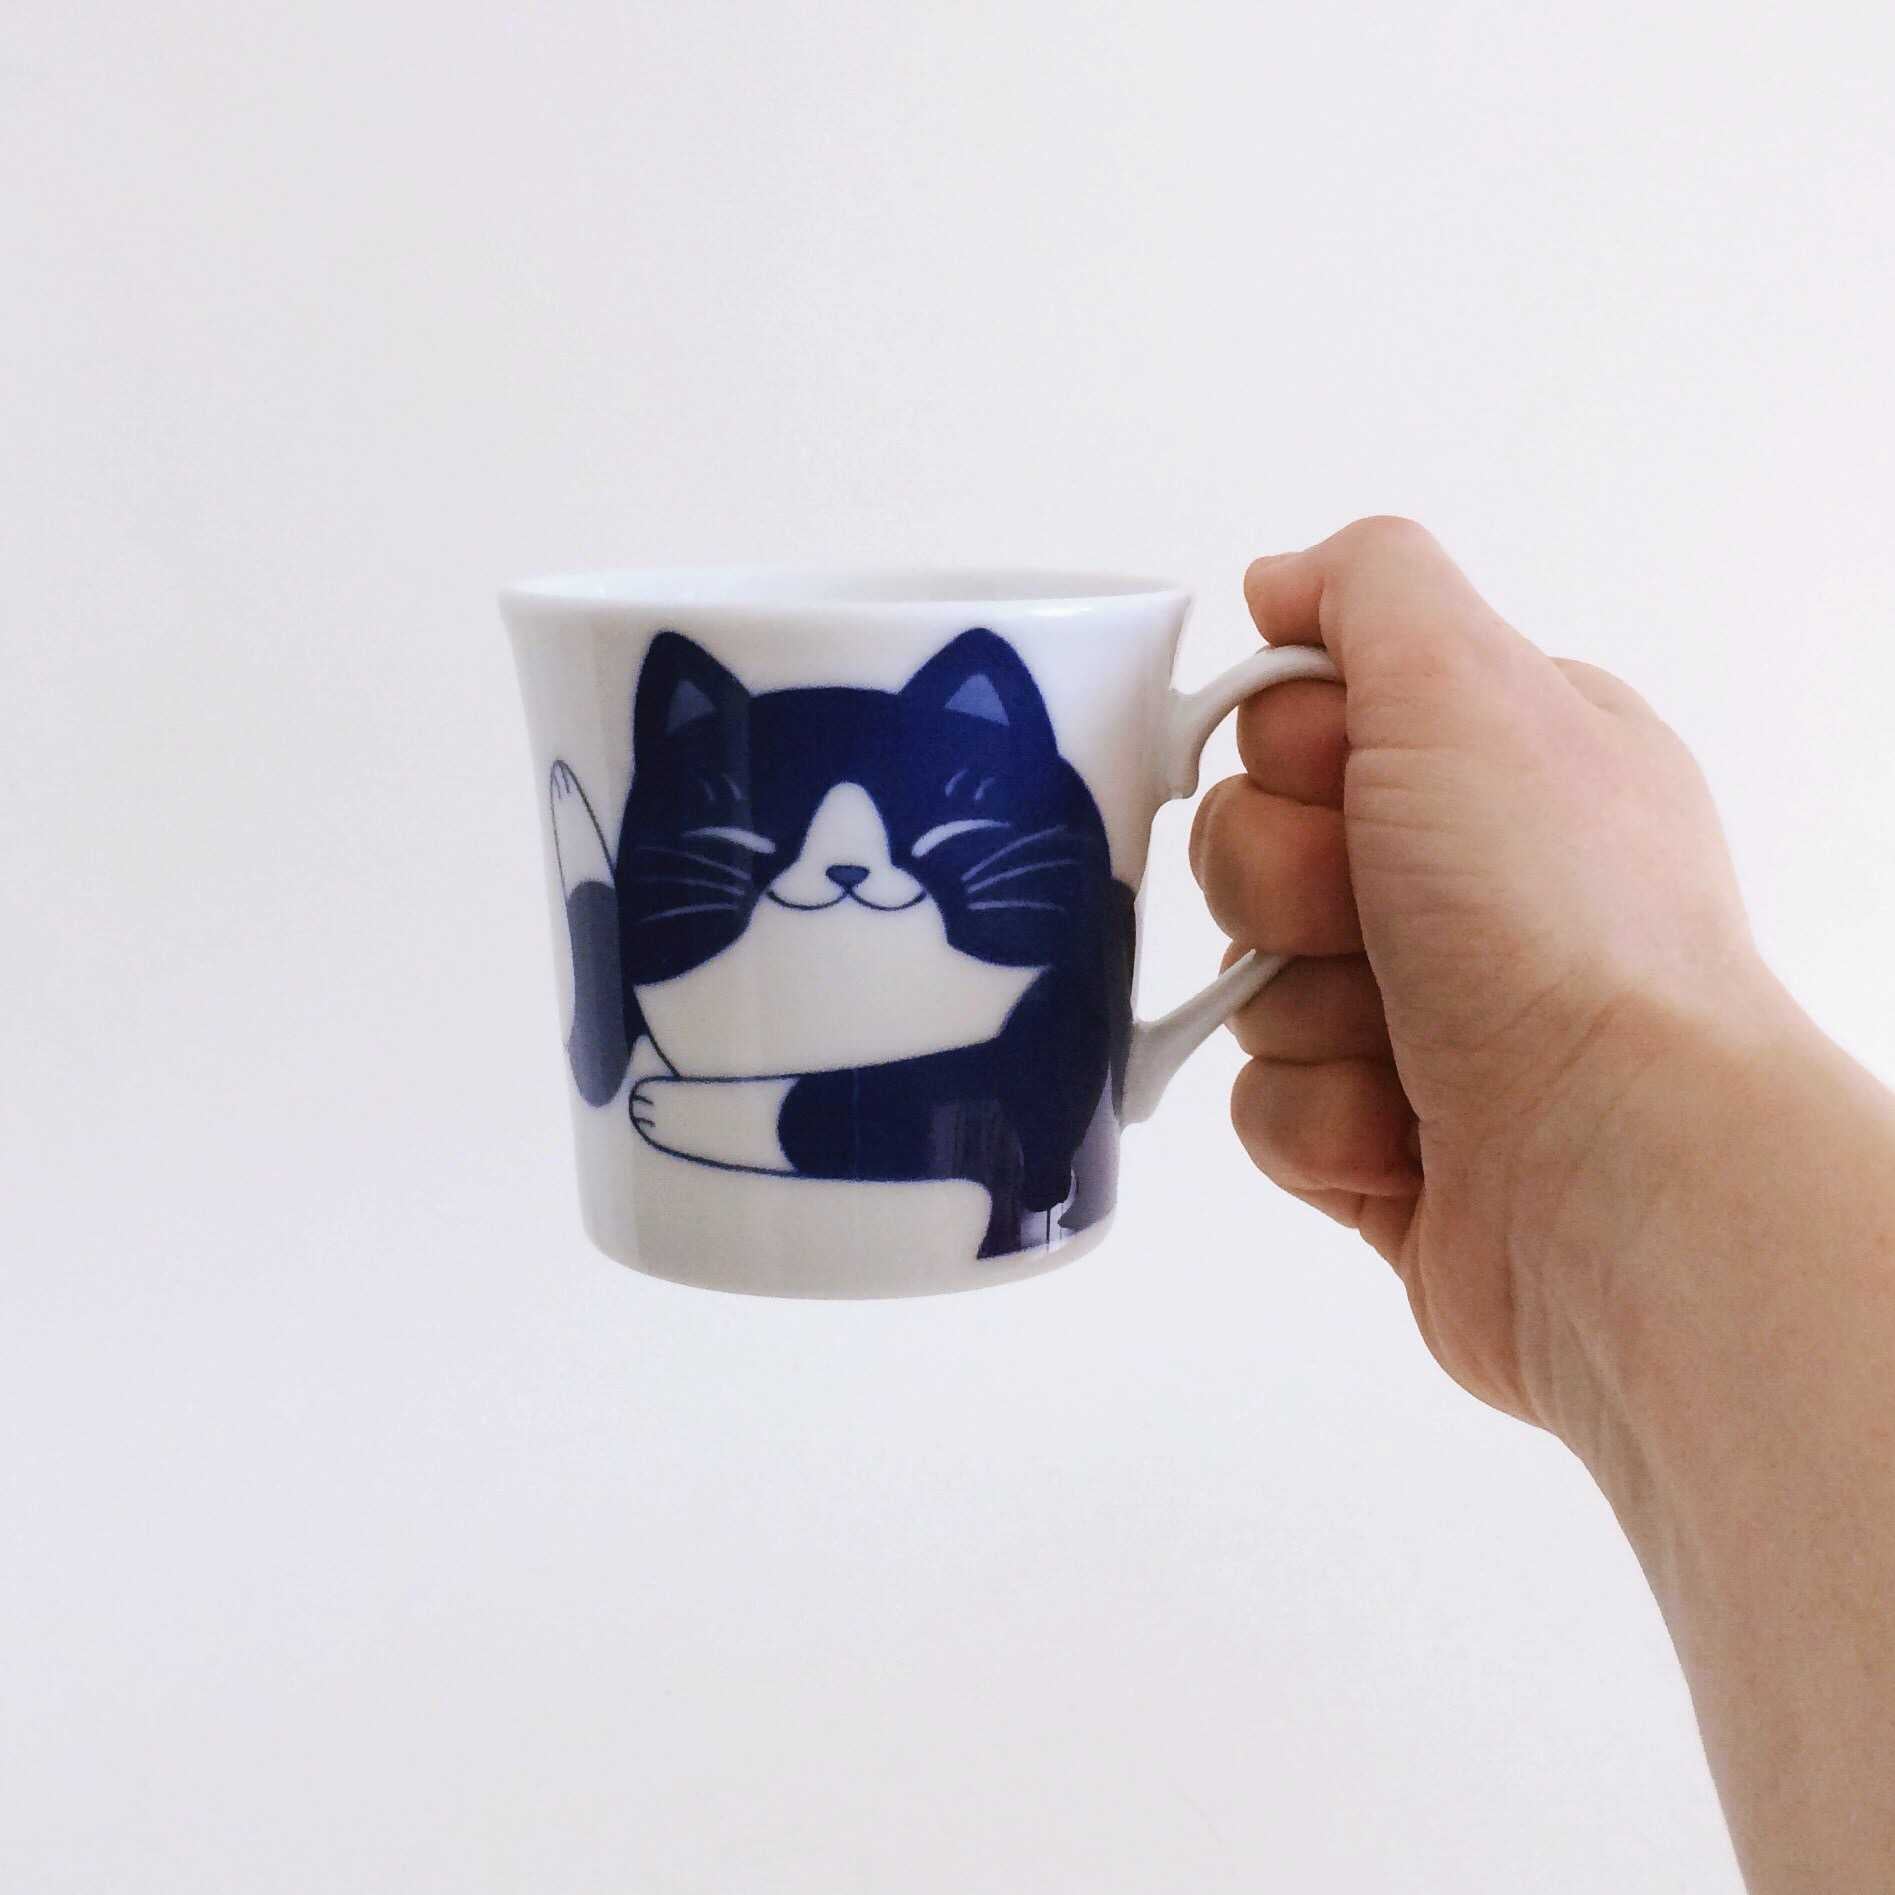 The "Fat Cat" mug